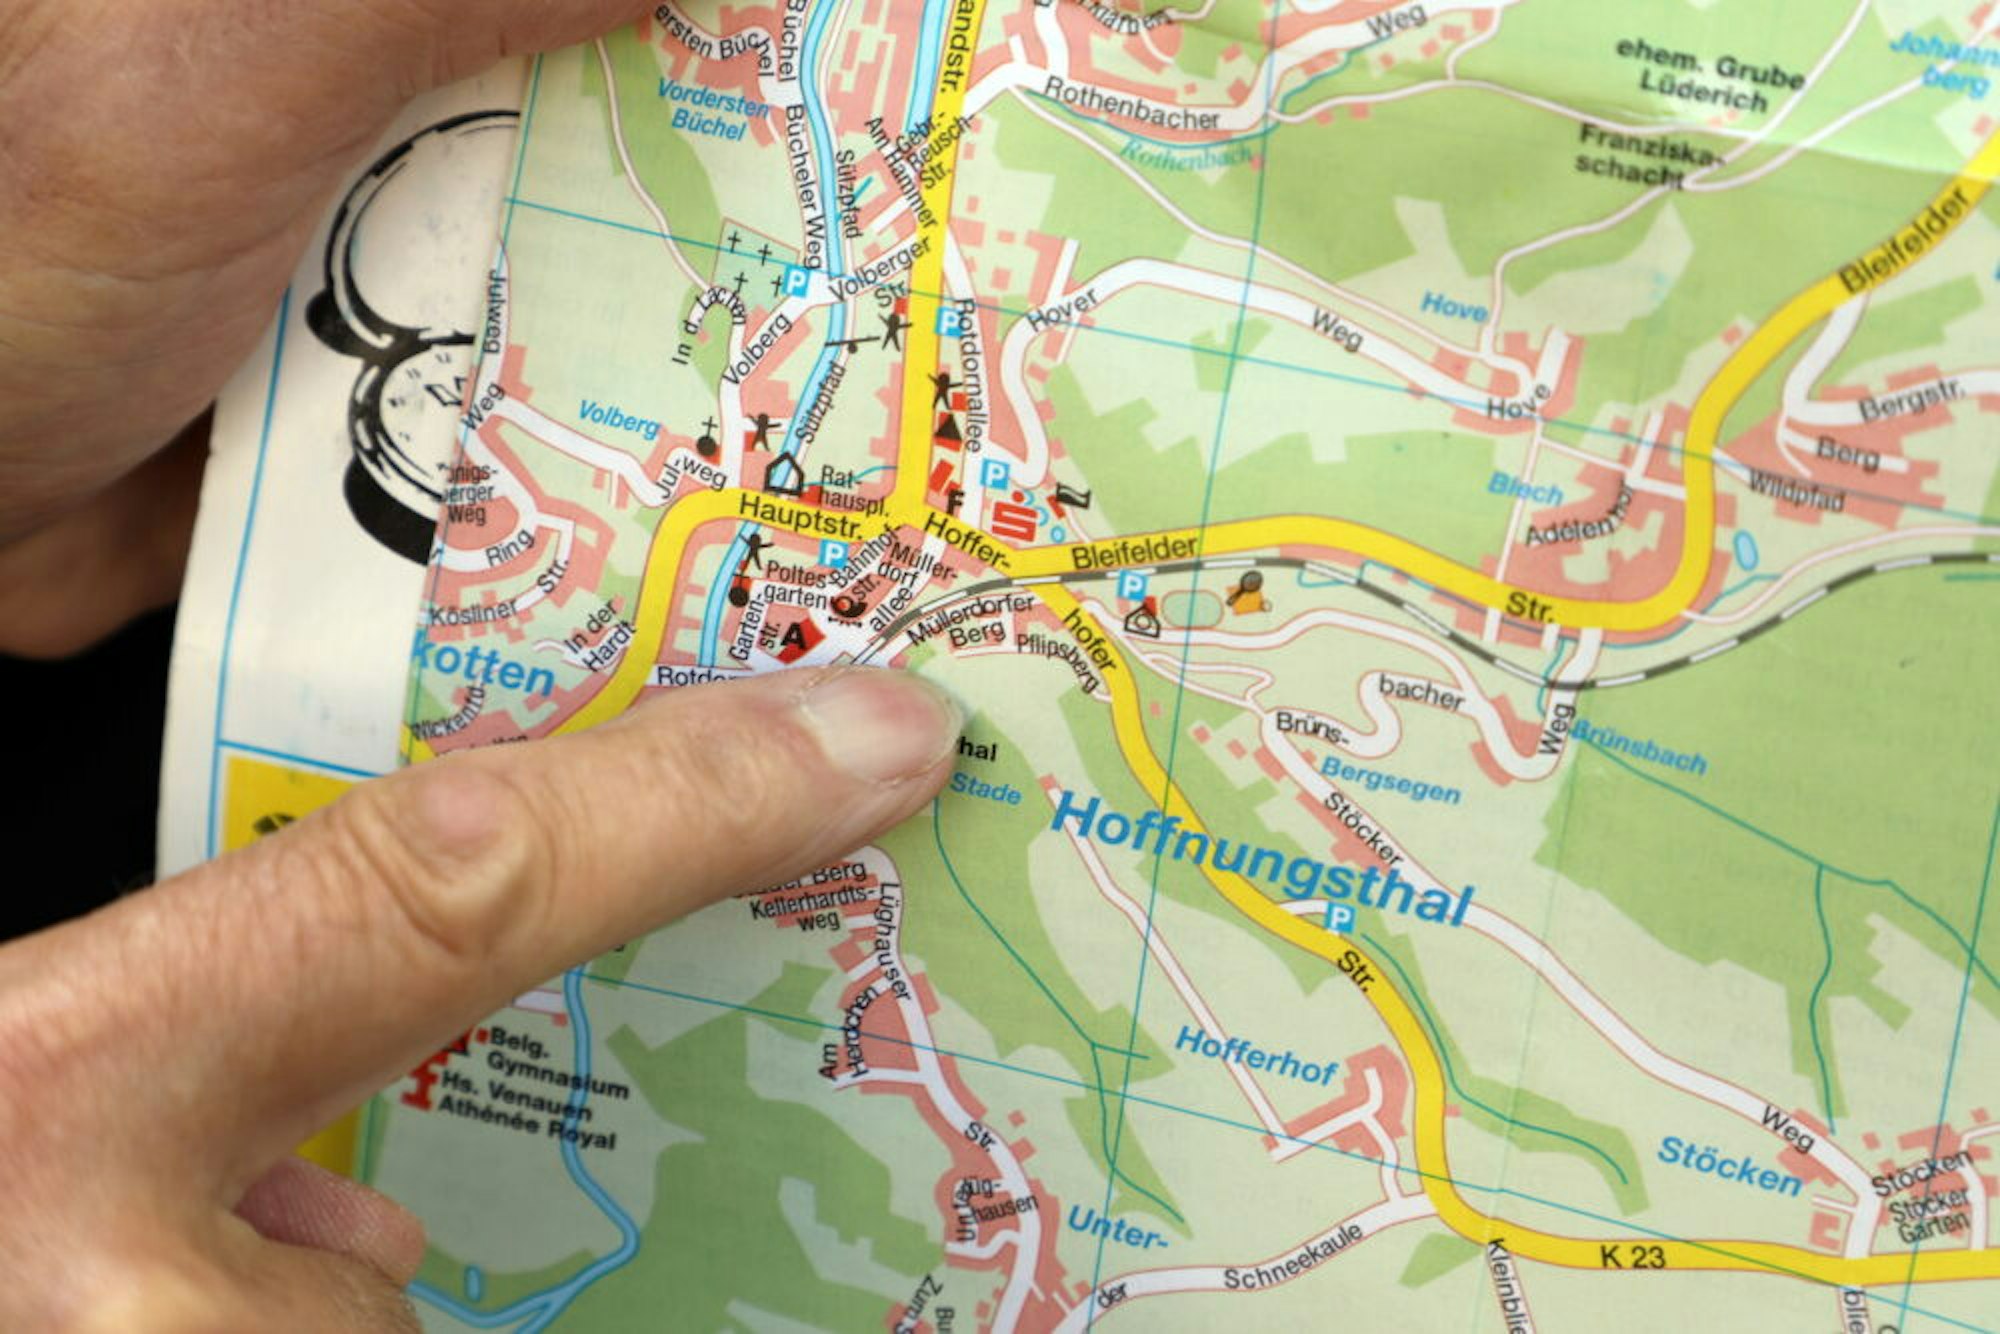 In vielen Ortsplänen und digitalen Navigationsprogrammen ist die Straße Müllerdorfer Berg falsch als Durchgangsstraße eingezeichnet.